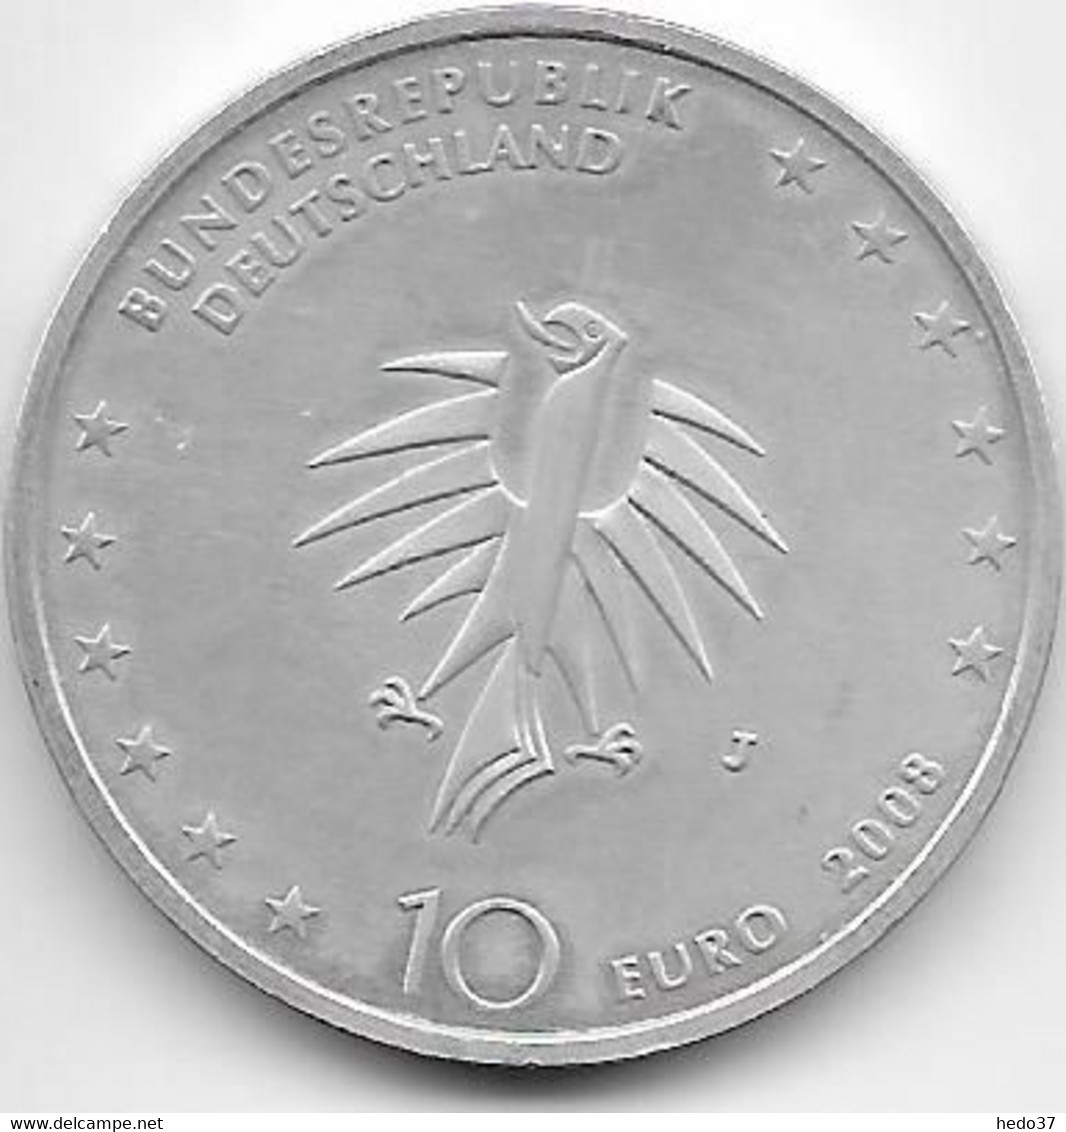 Allemagne - 10 Euro € 2008 - Argent - Commémoratives